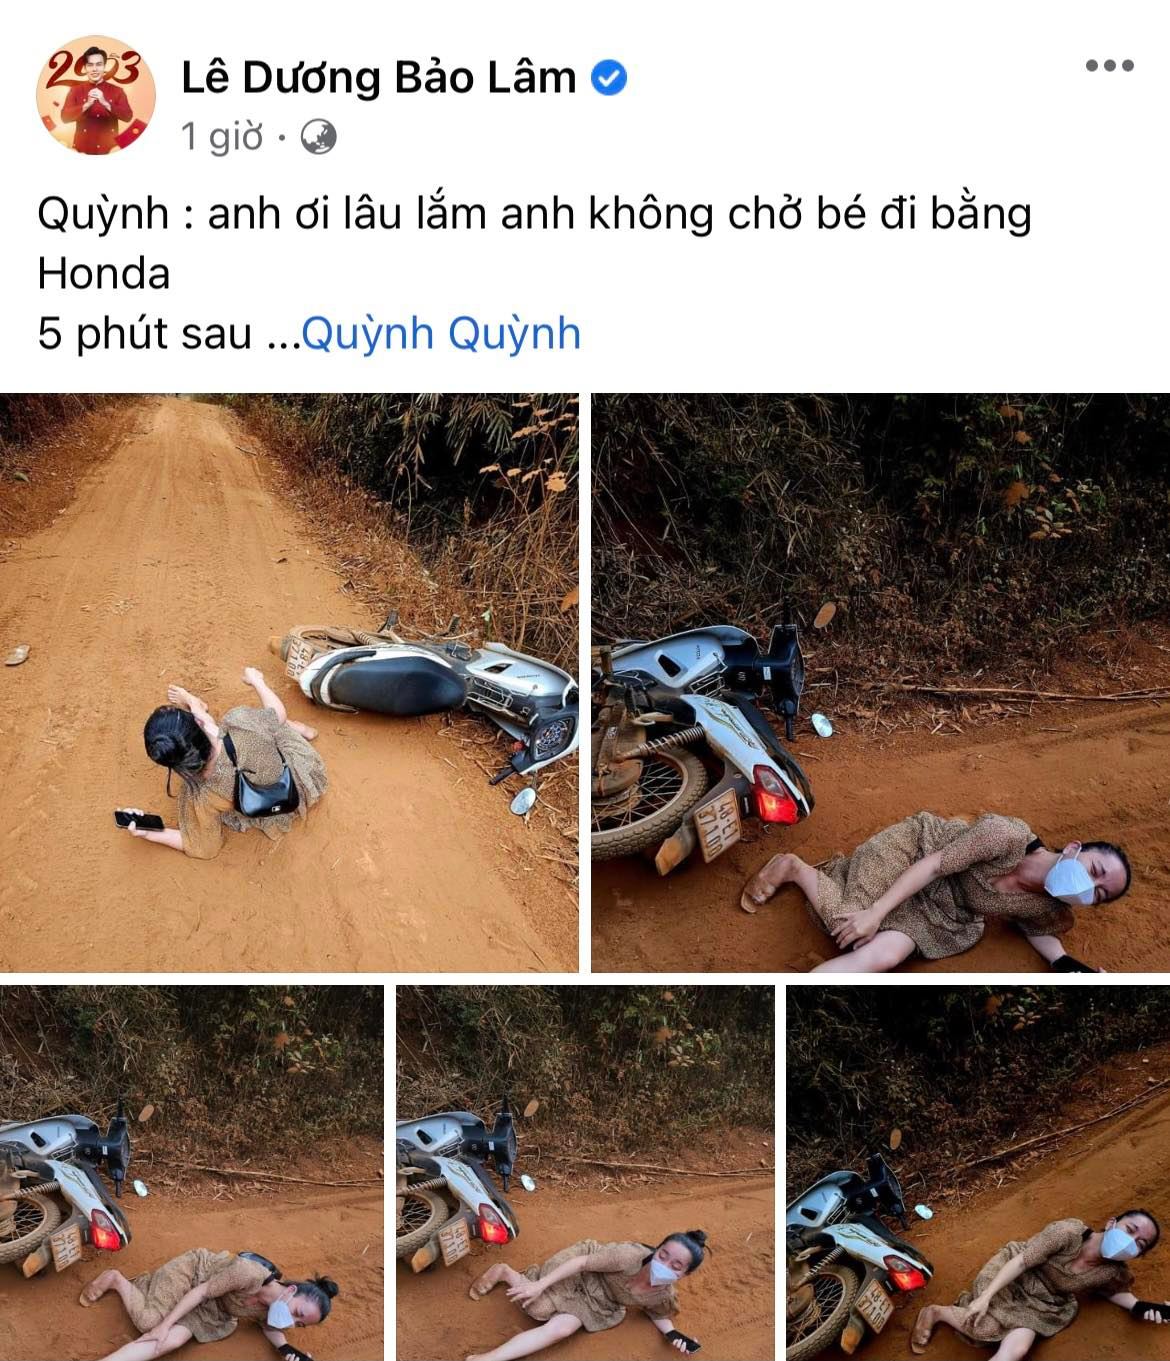 Chở Quỳnh Quỳnh vi vu xe máy nhưng bị té, Lê Dương Bảo Lâm không đỡ mà còn có hành động 'lạnh lùng' - ảnh 1